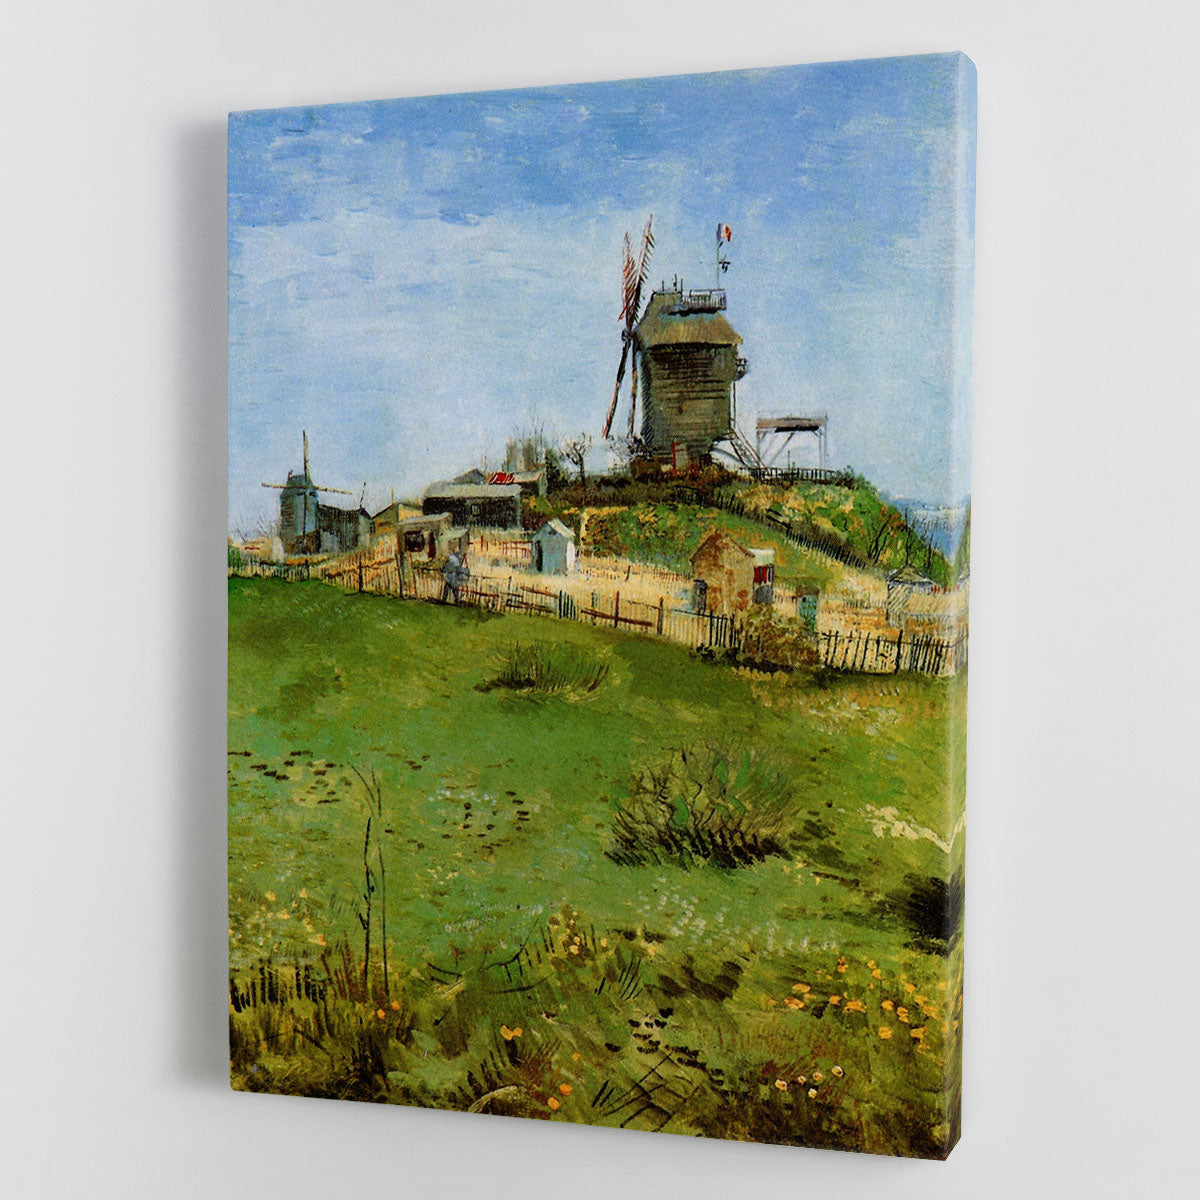 Le Moulin de la Galette 4 by Van Gogh Canvas Print or Poster - Canvas Art Rocks - 1